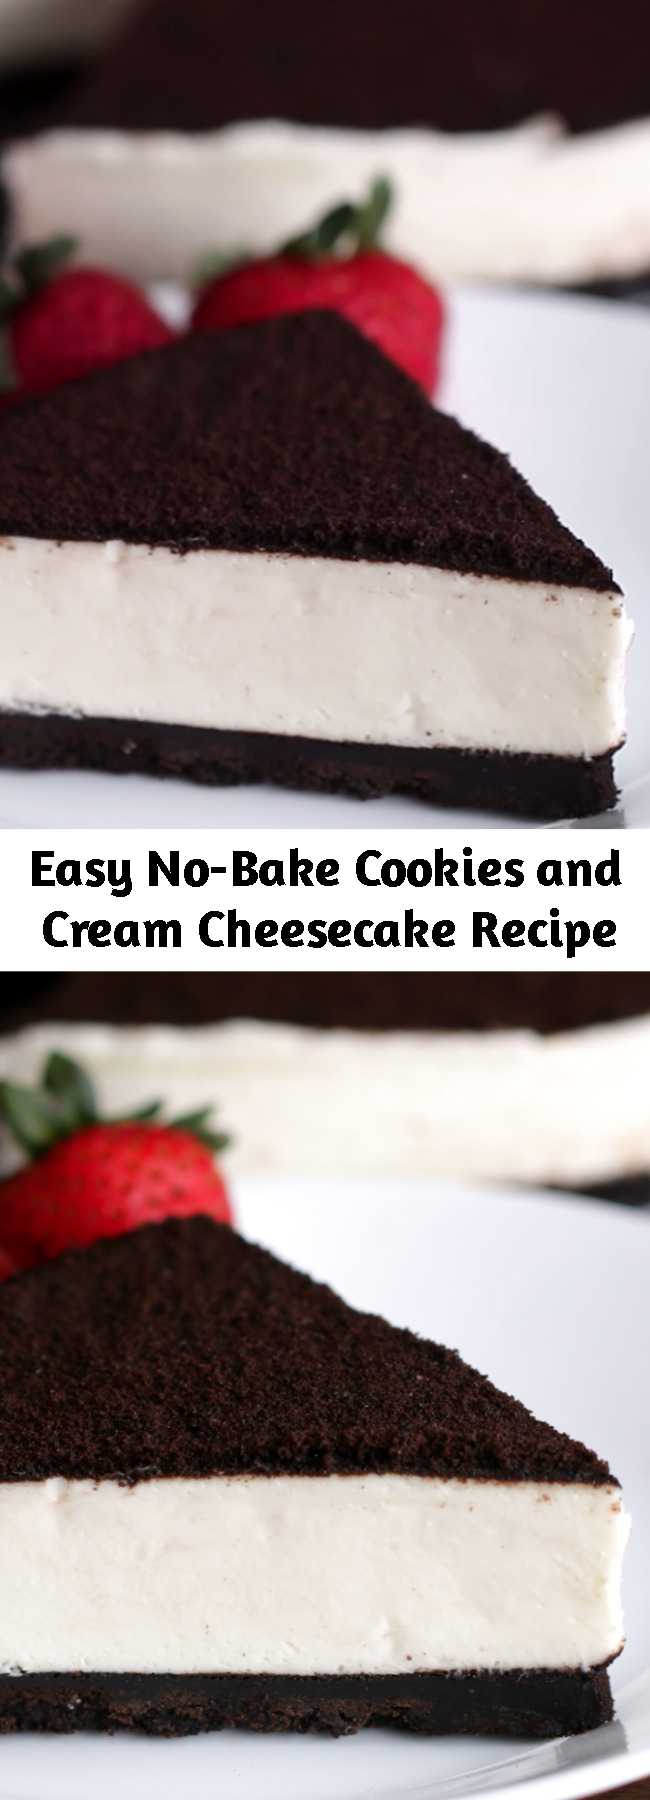 Easy No-Bake Cookies and Cream Cheesecake Recipe